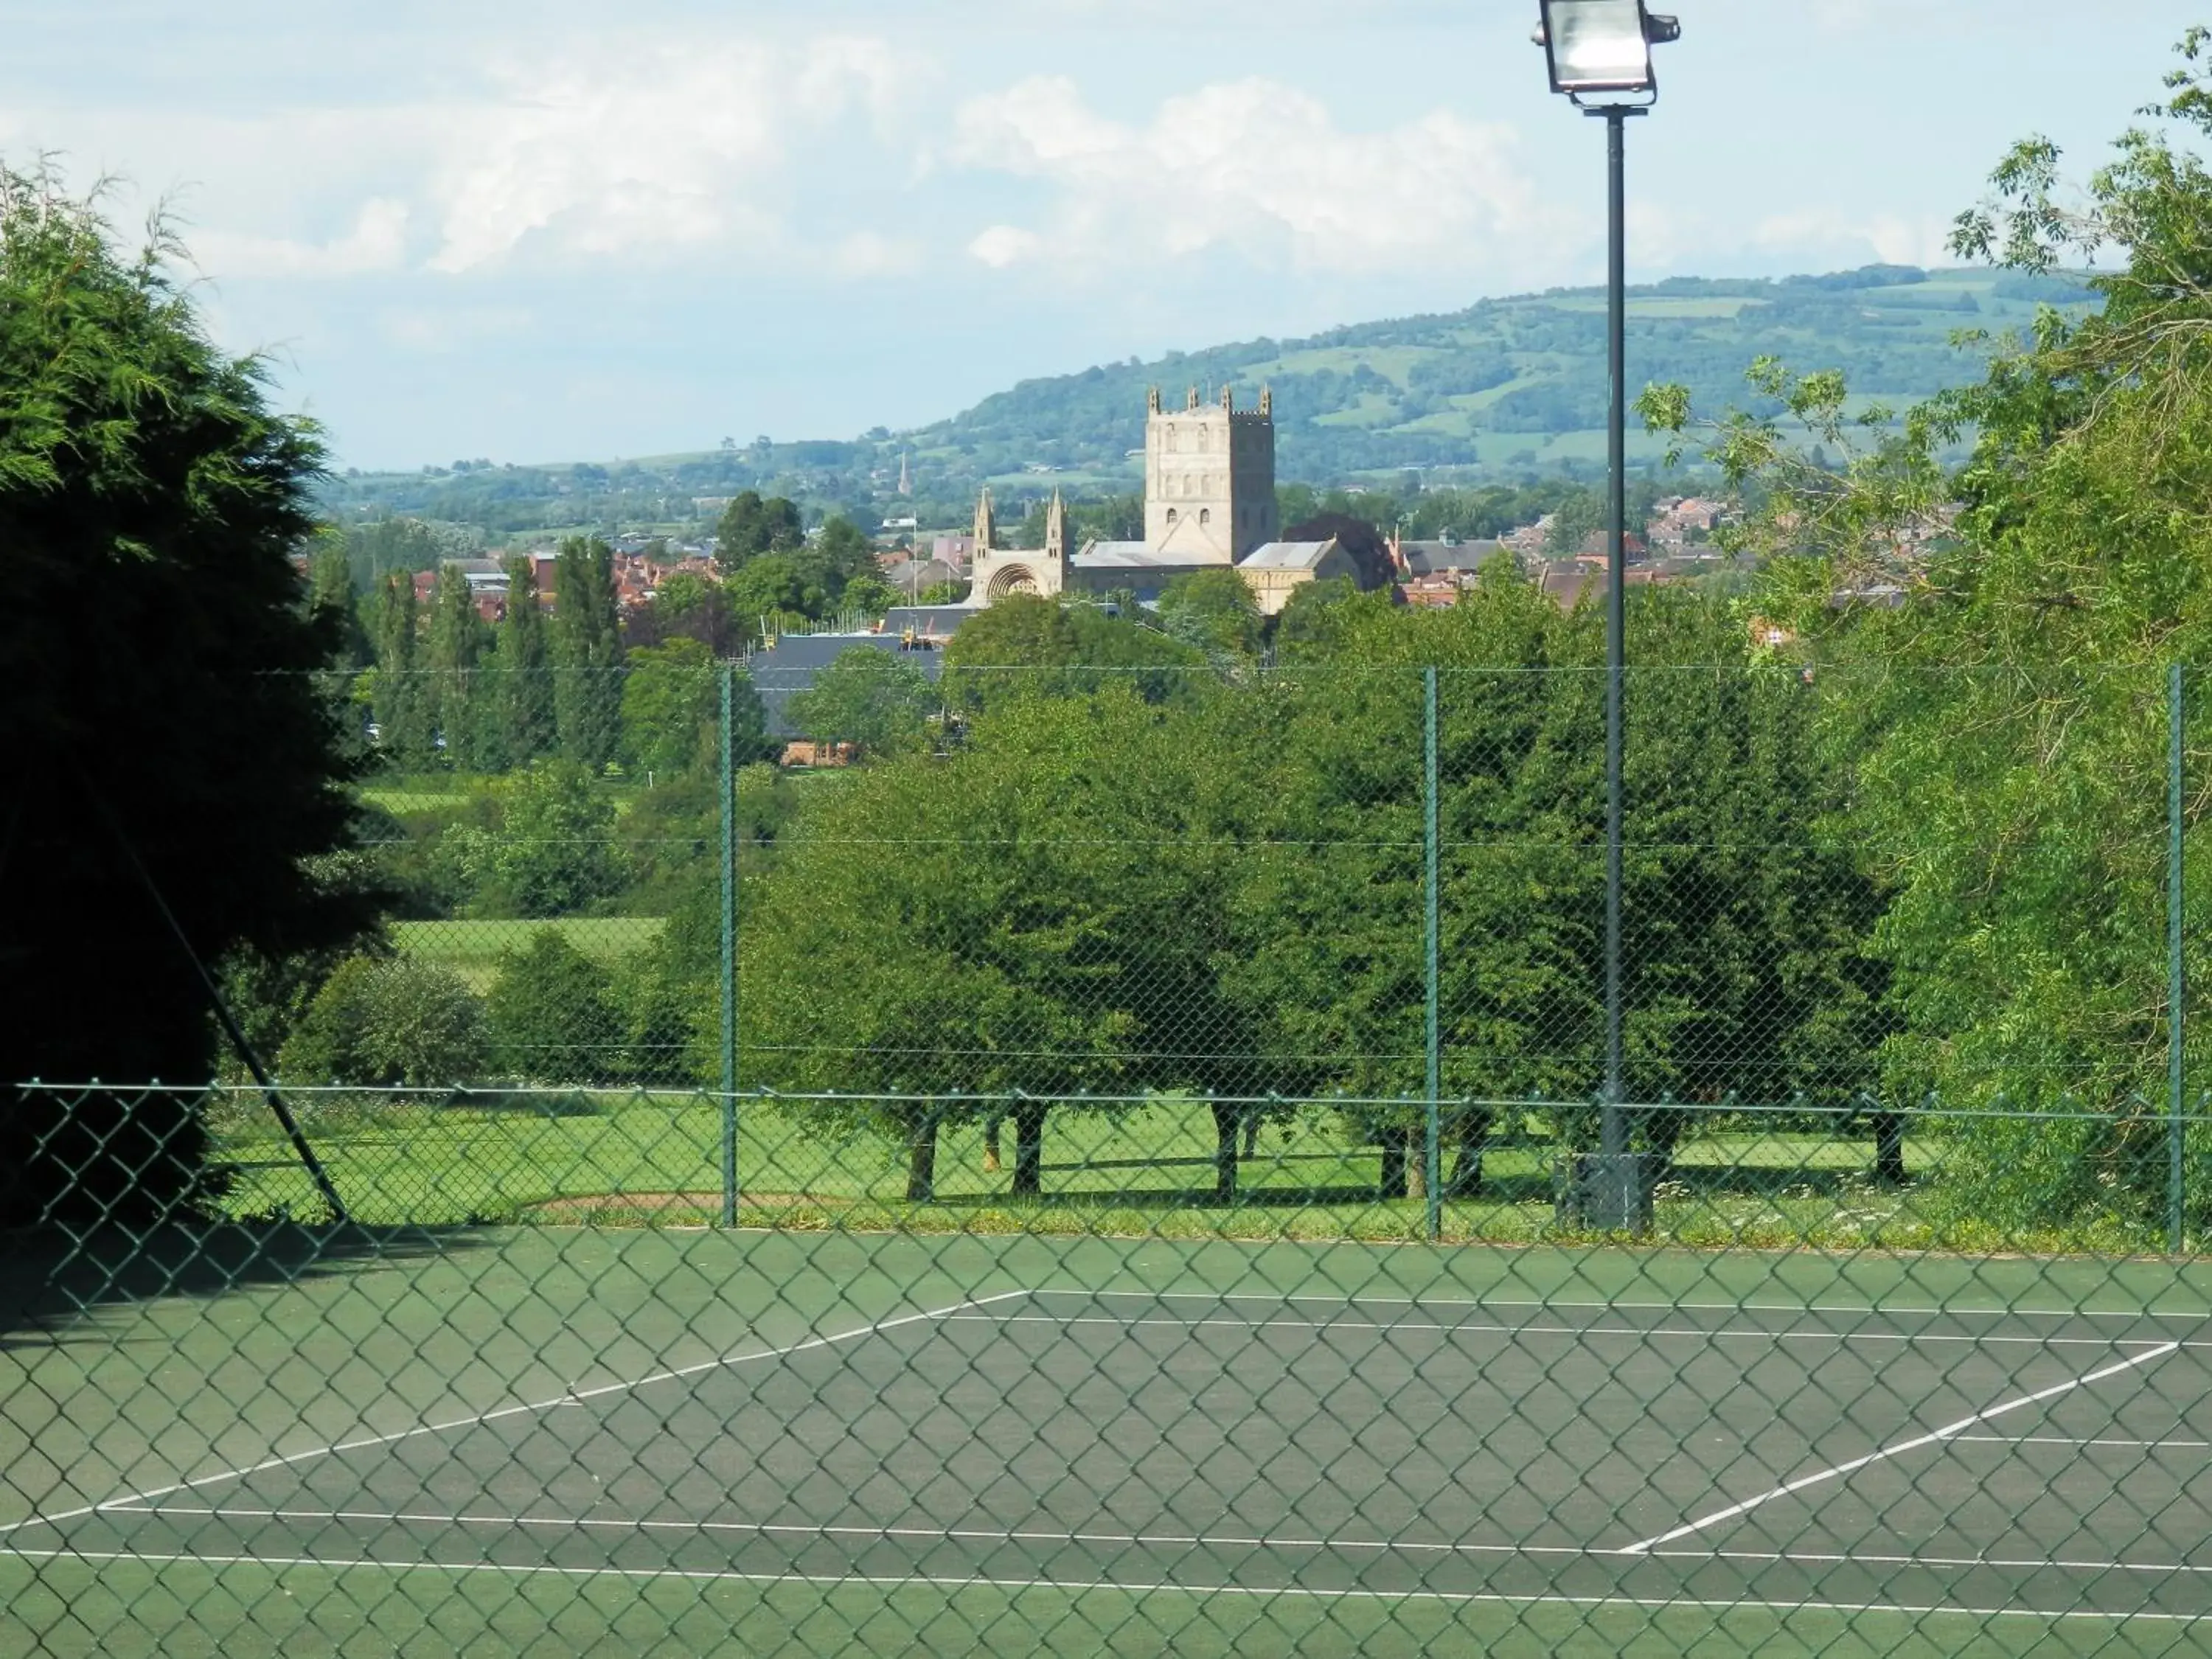 Tennis court in Tewkesbury Park